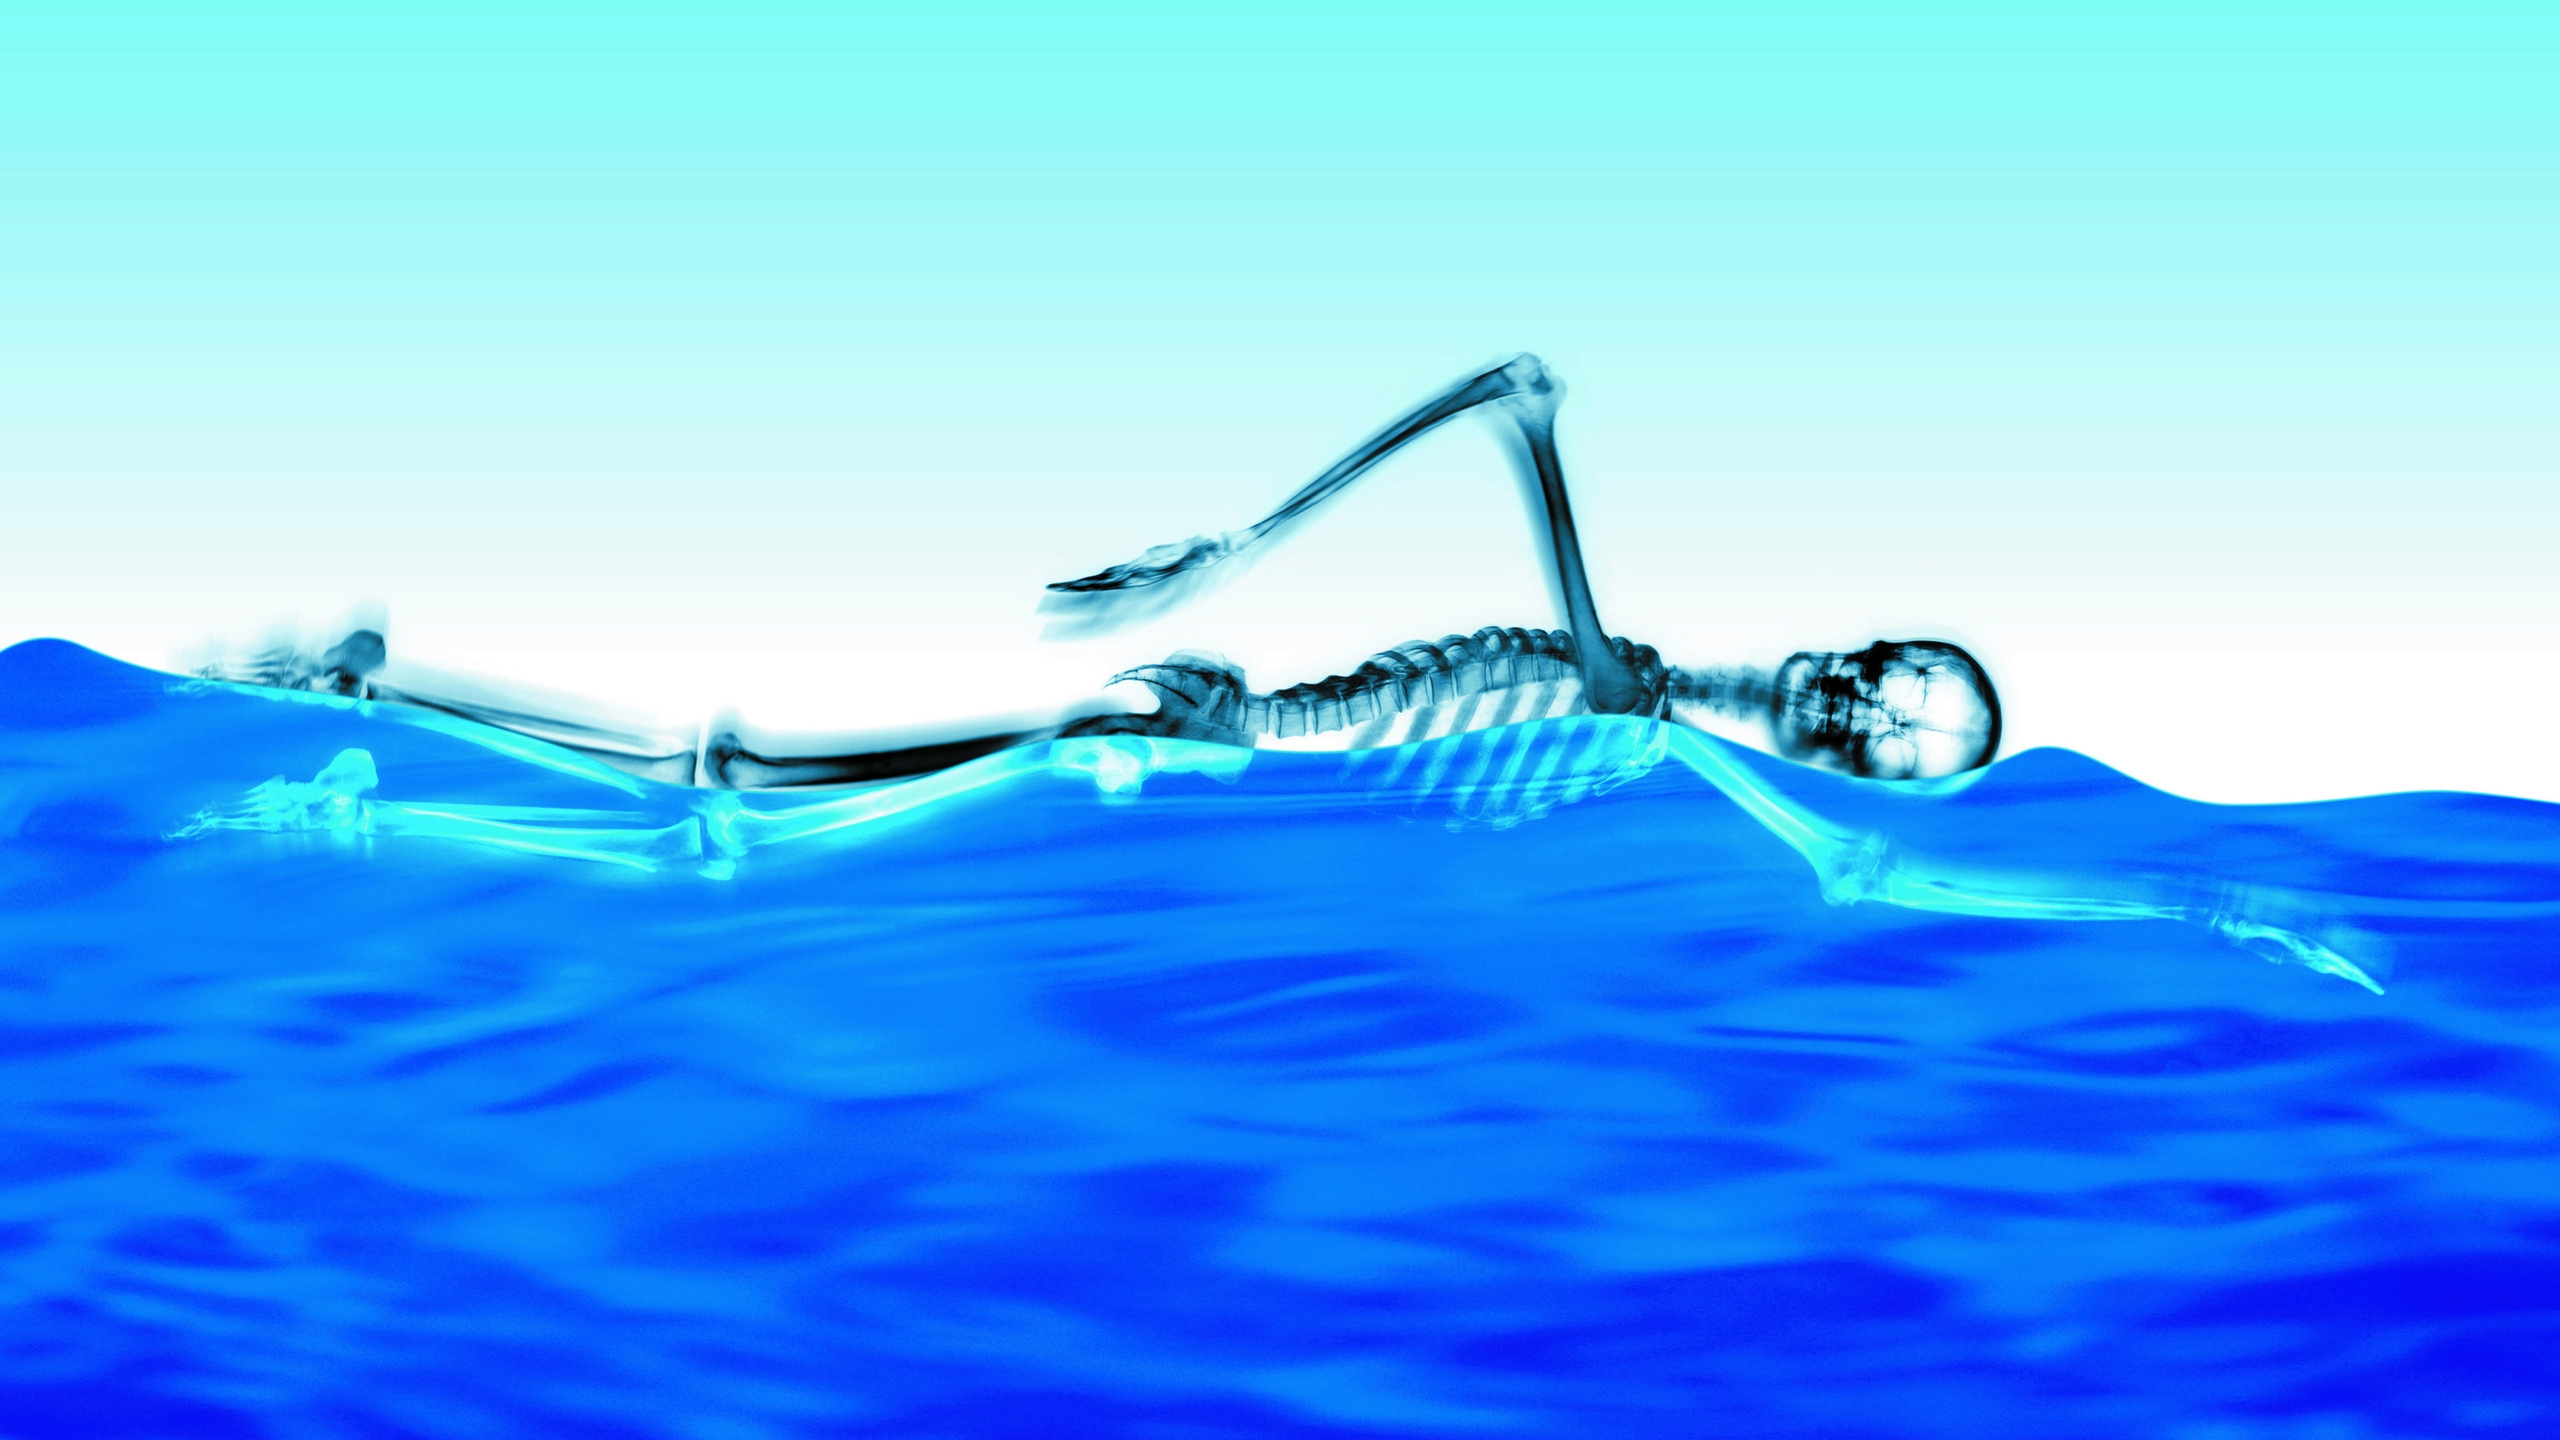 Swimming Skeleton for 2560x1440 HDTV resolution